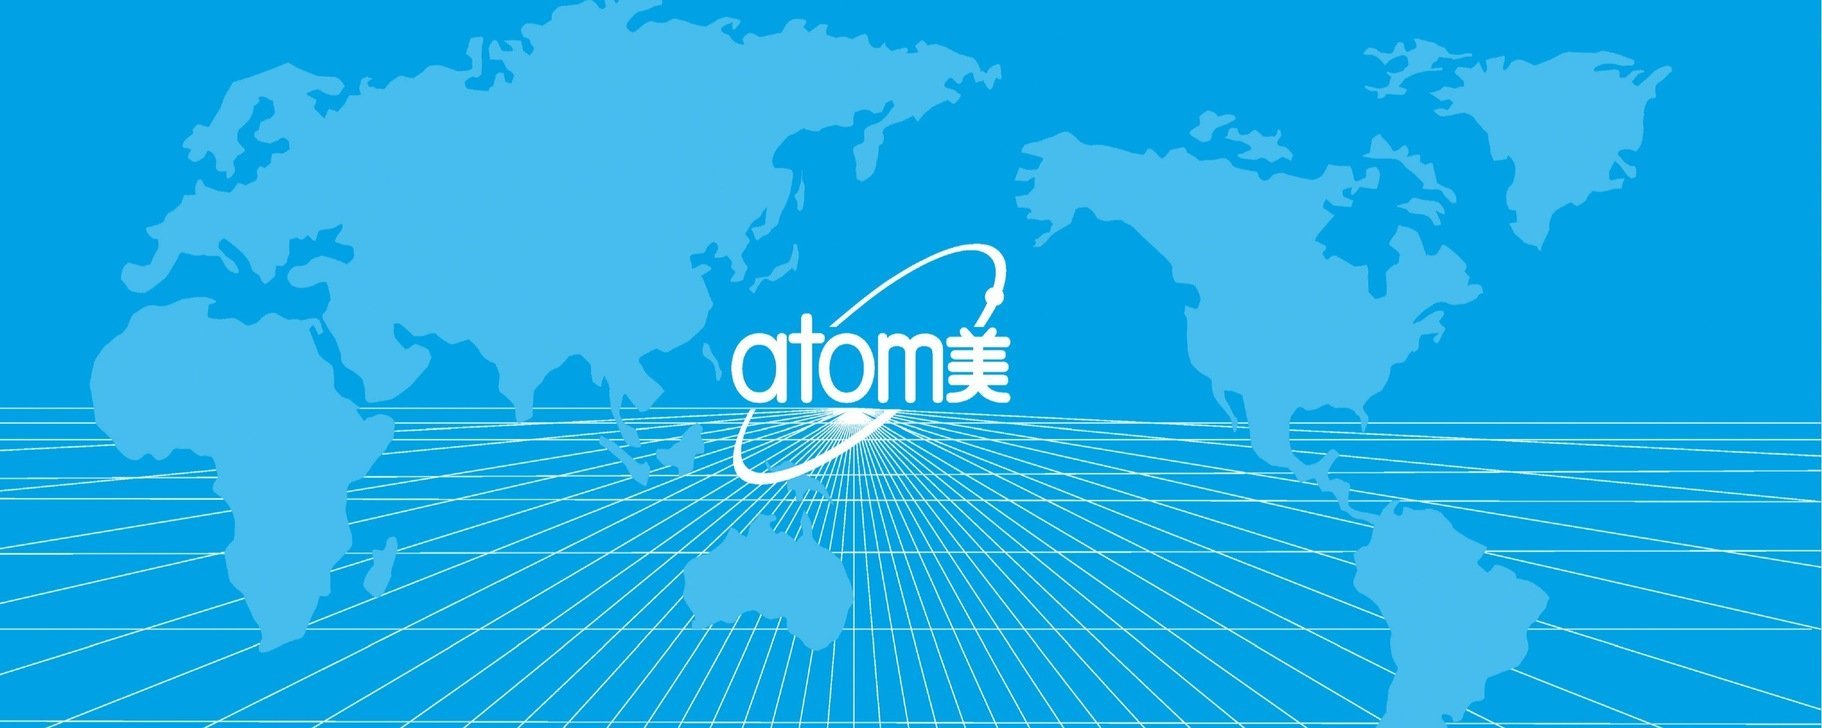 Атоми логотип на прозрачном фоне фото